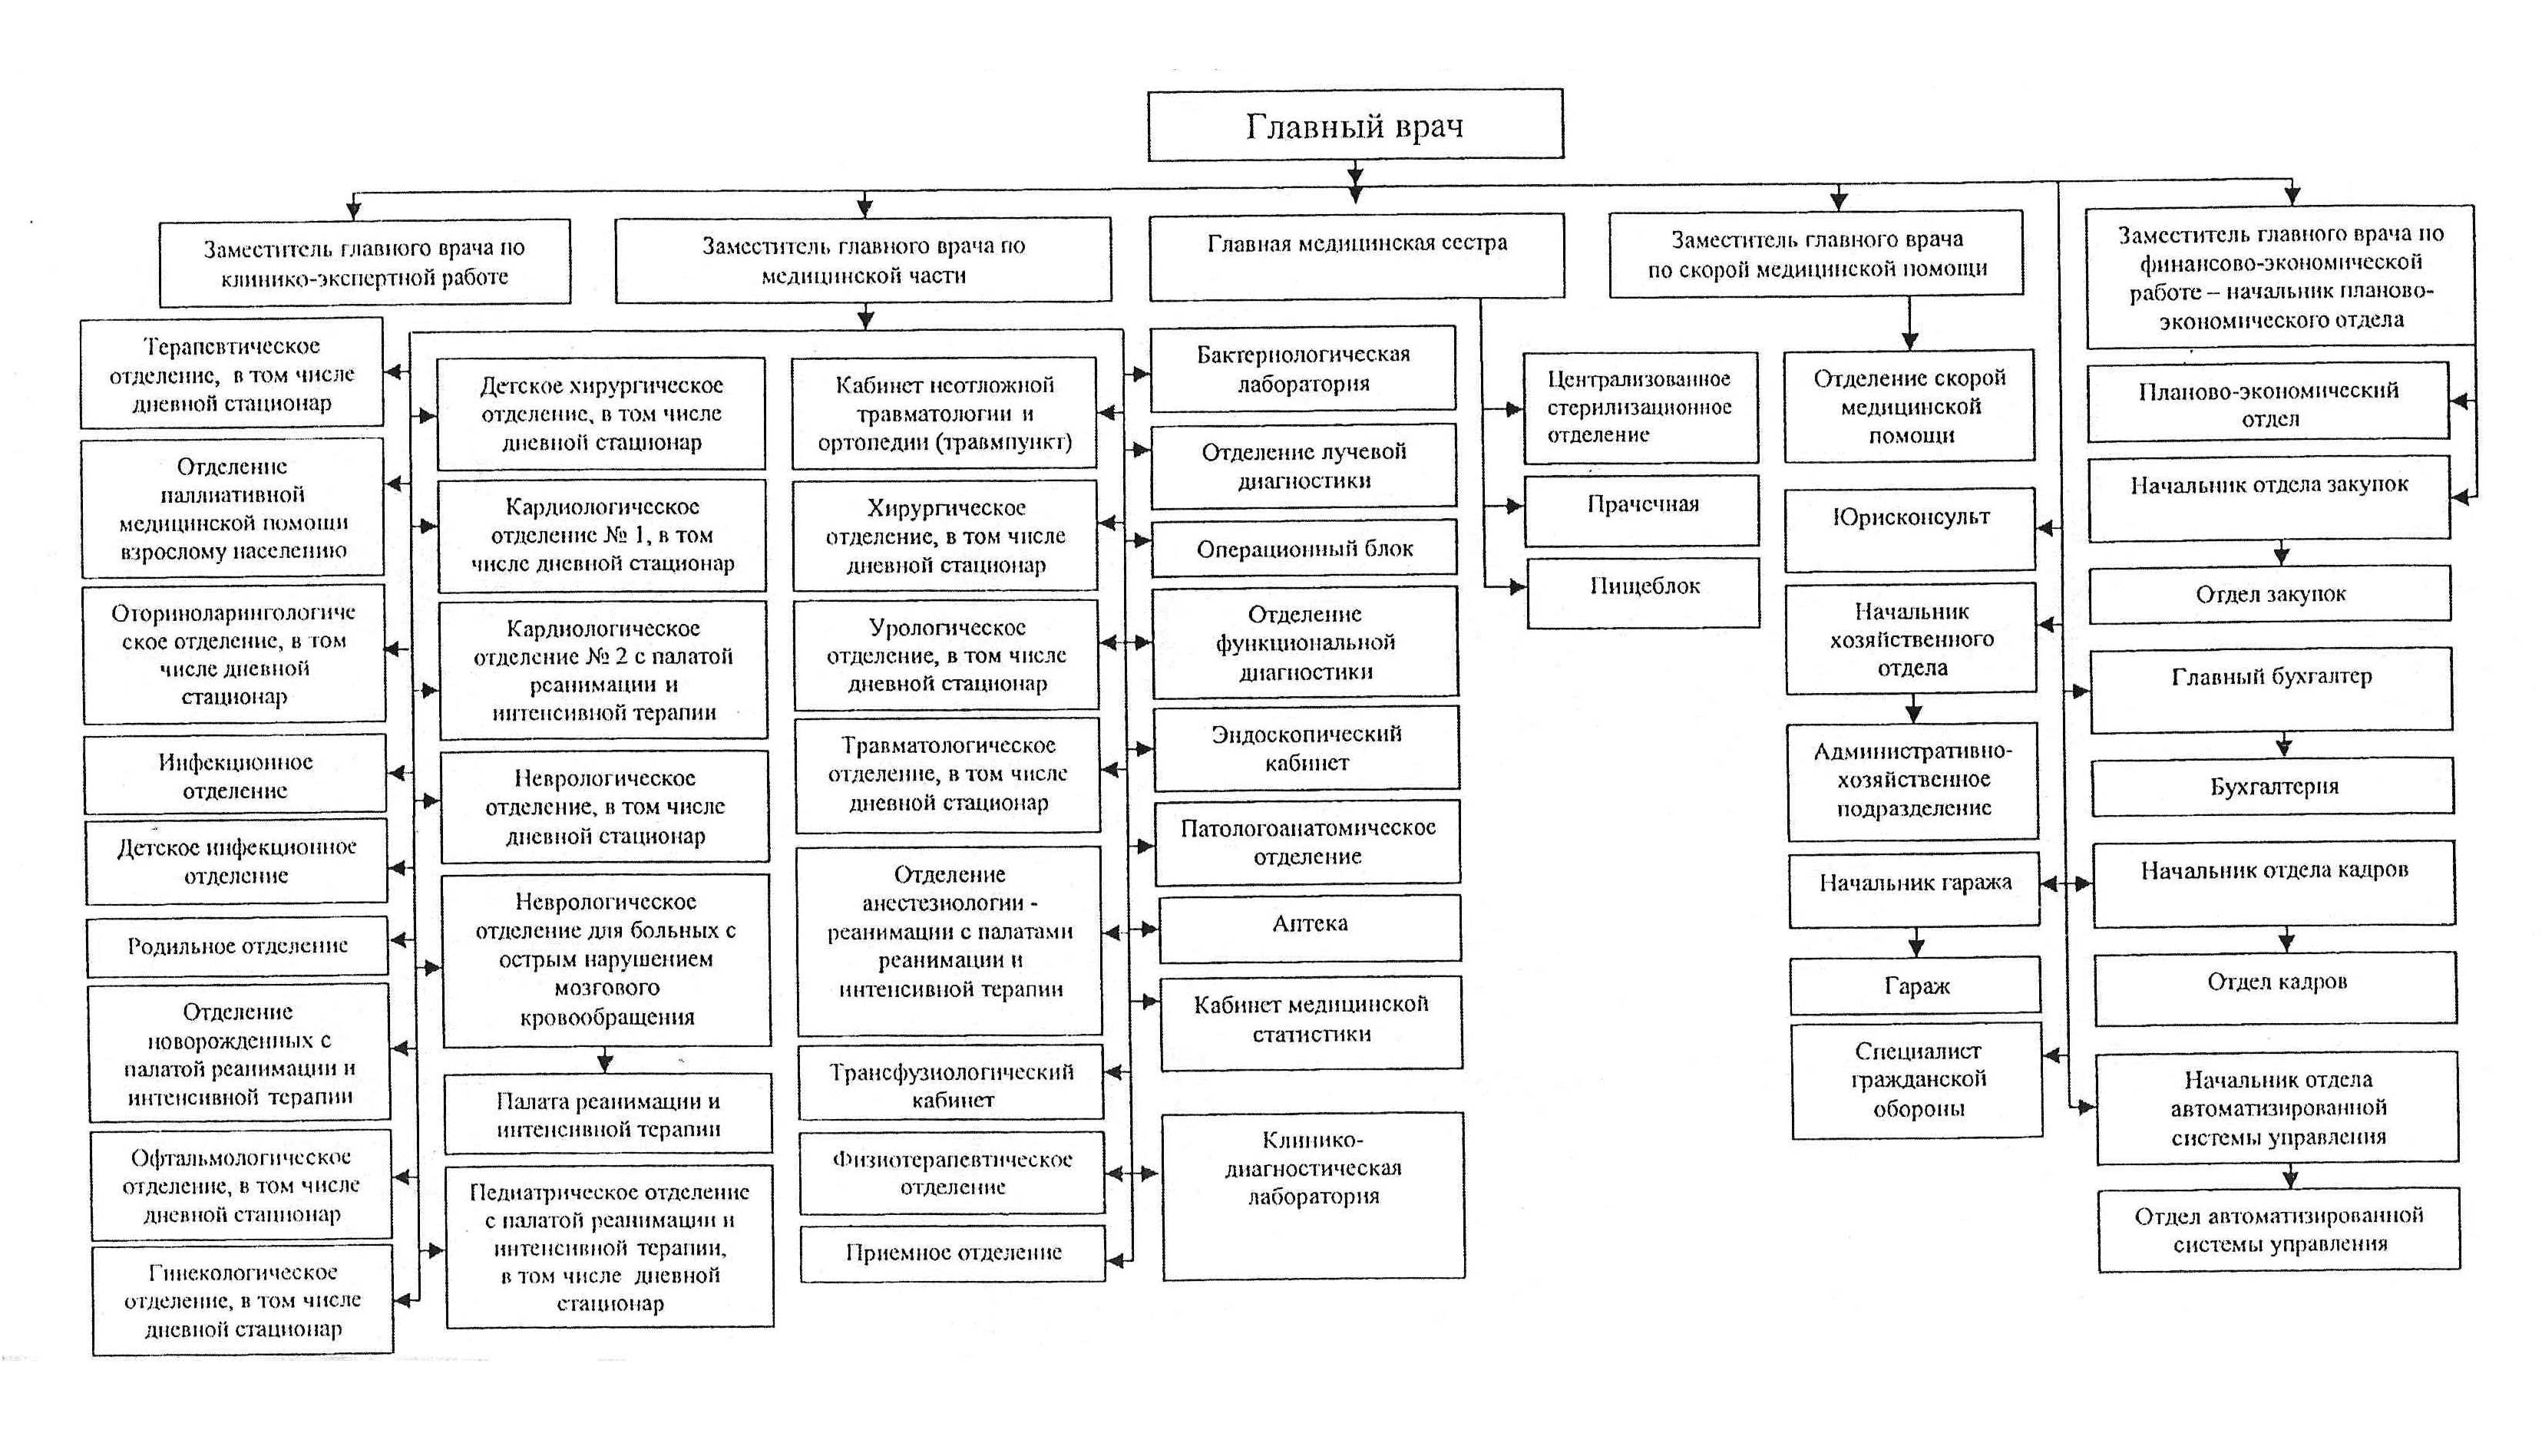 Структура медицинской организации